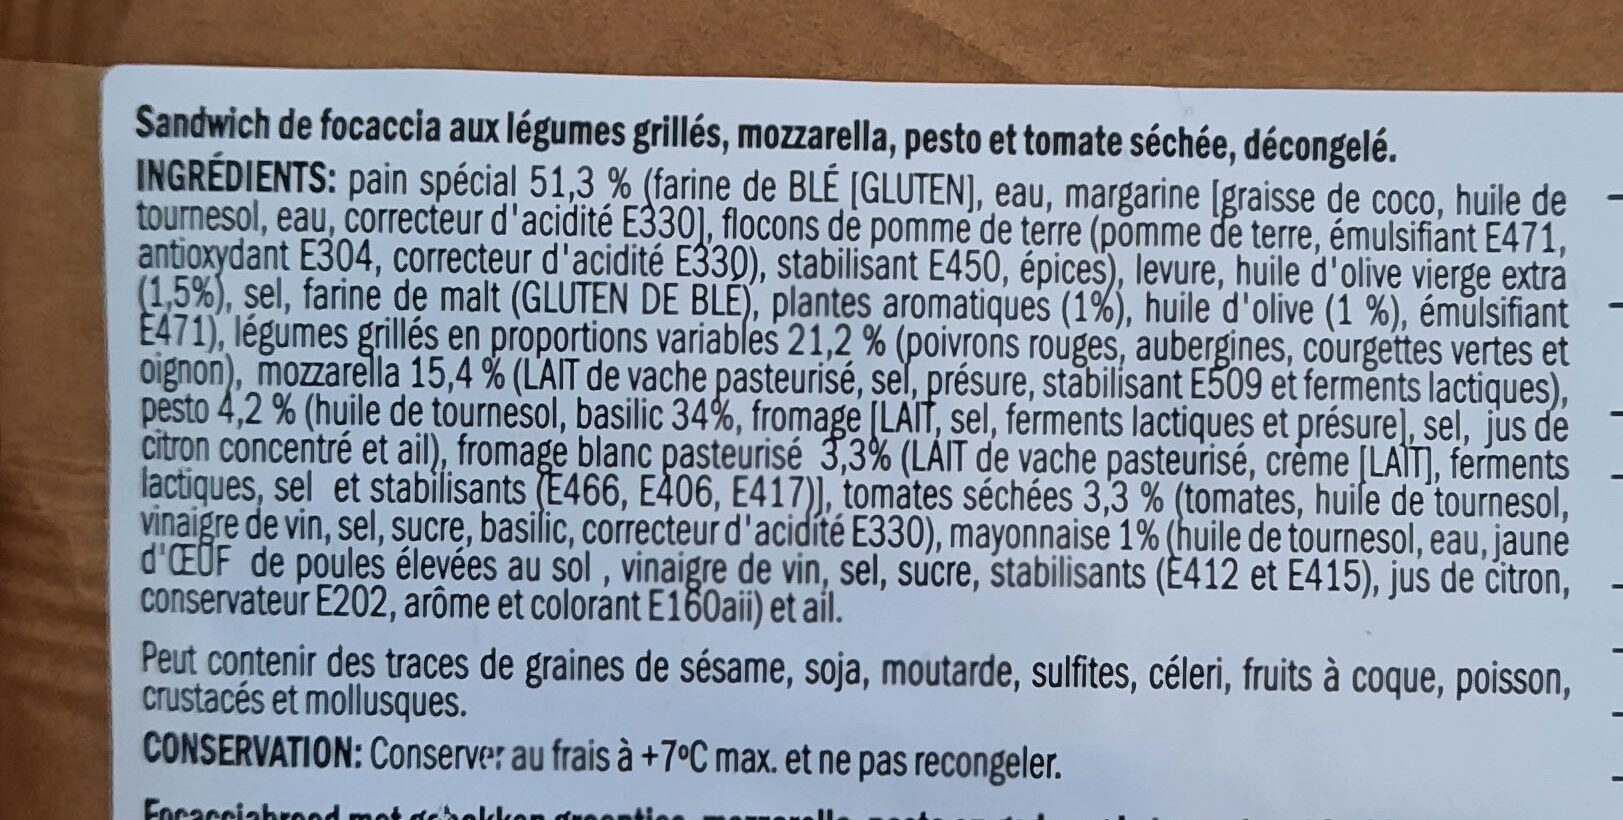 Foxaccia Mozzarella et legumes grillés - المكونات - fr